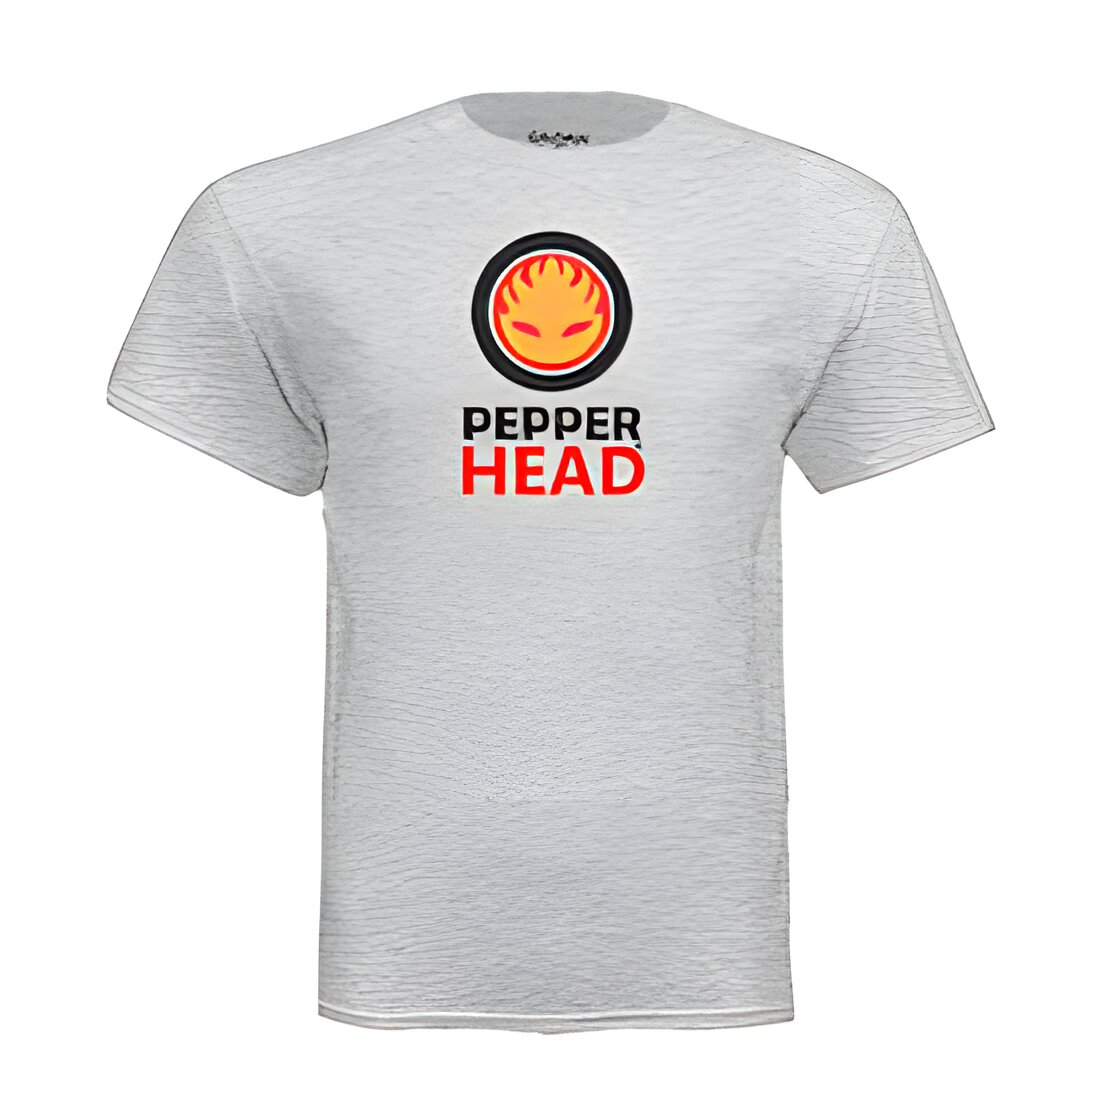 Free Pepperhead T-Shirt